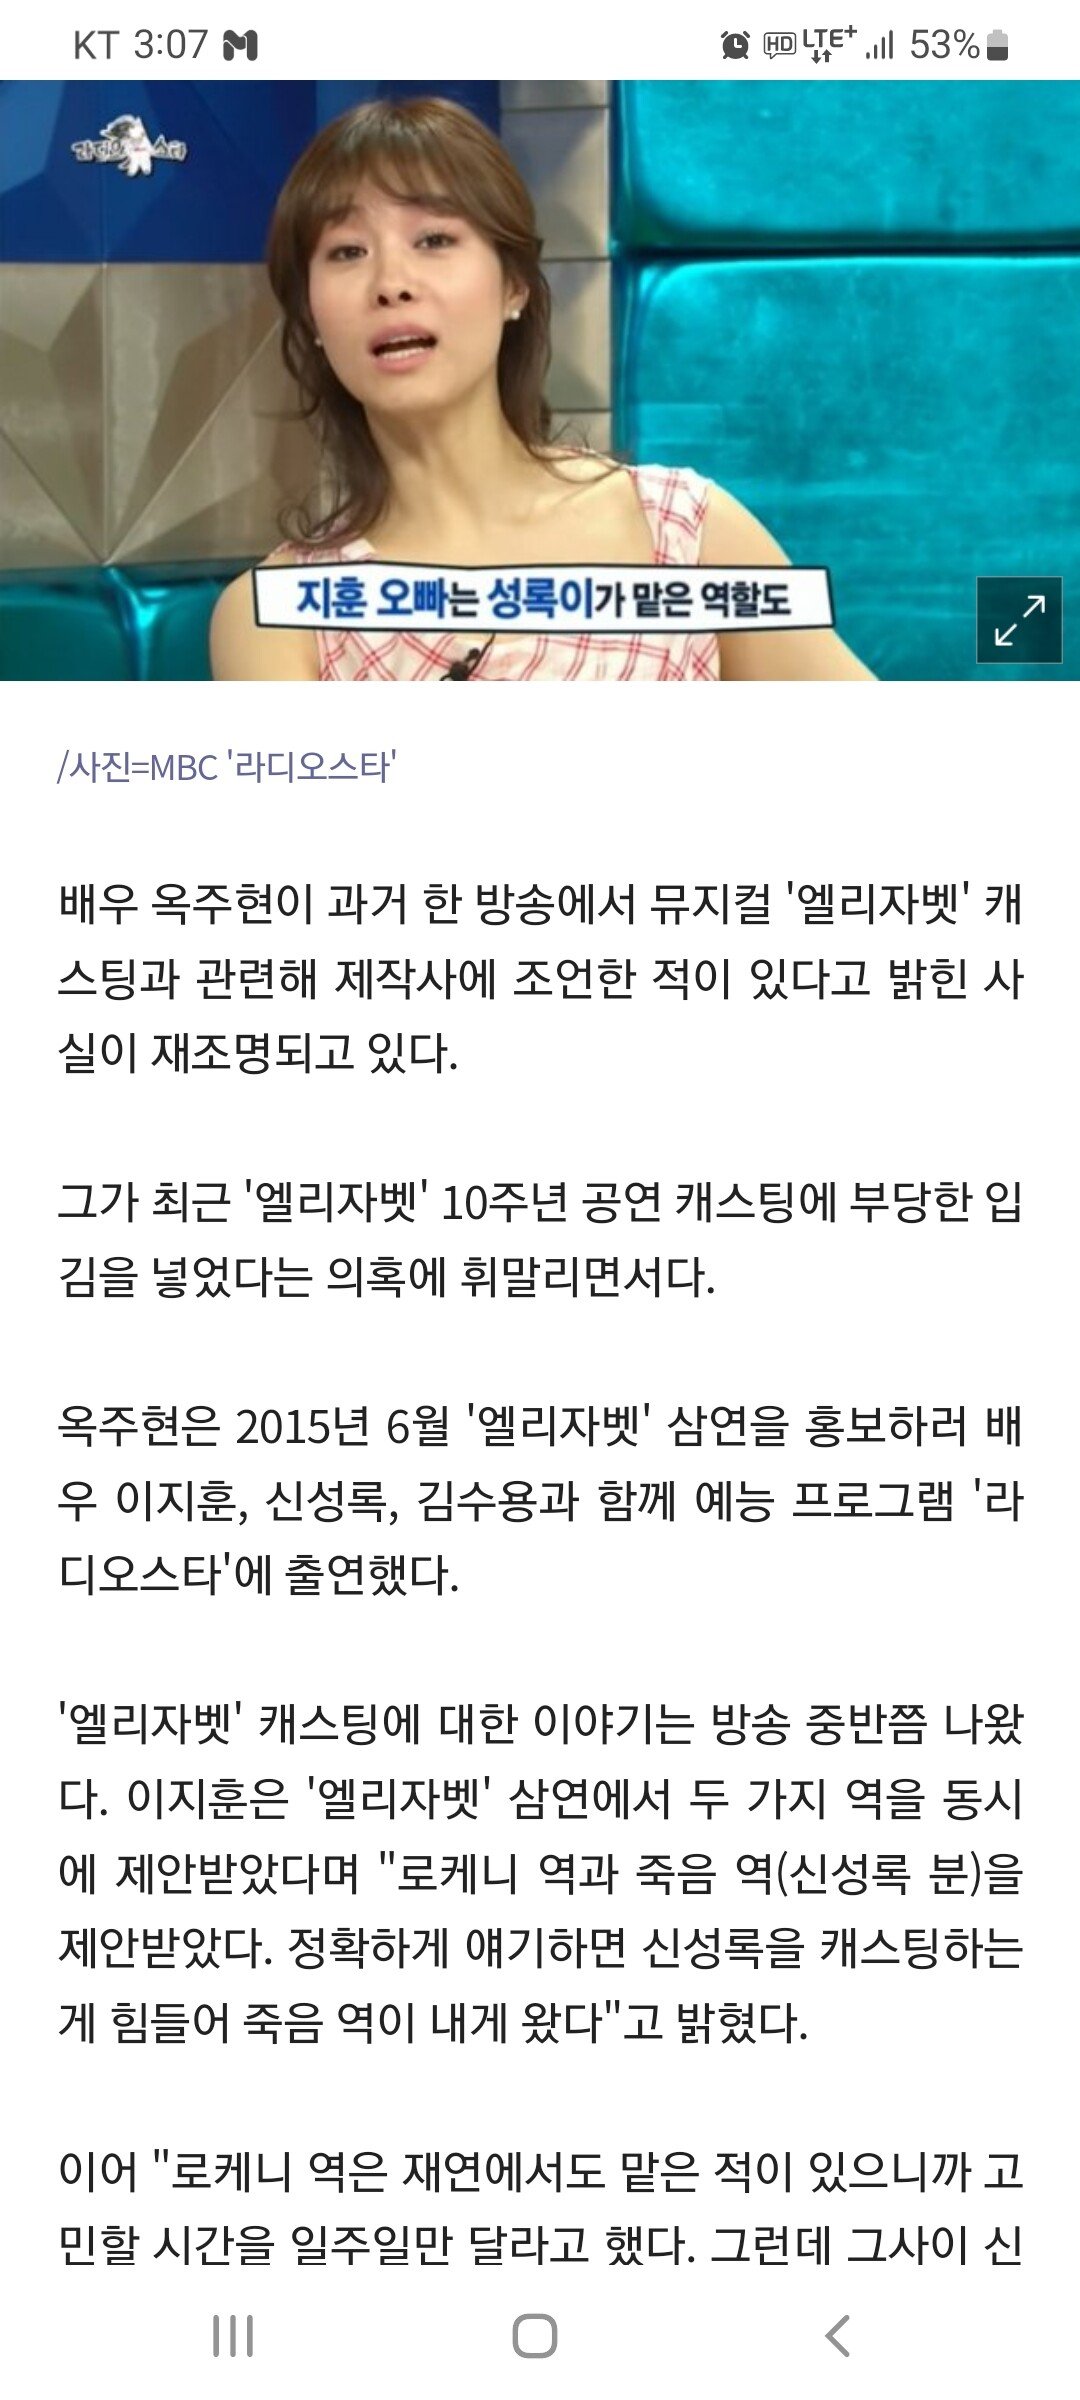 ""옥주현, 모든 걸 조율한 실세""…''엘리자벳'' 캐스팅 뒷얘...